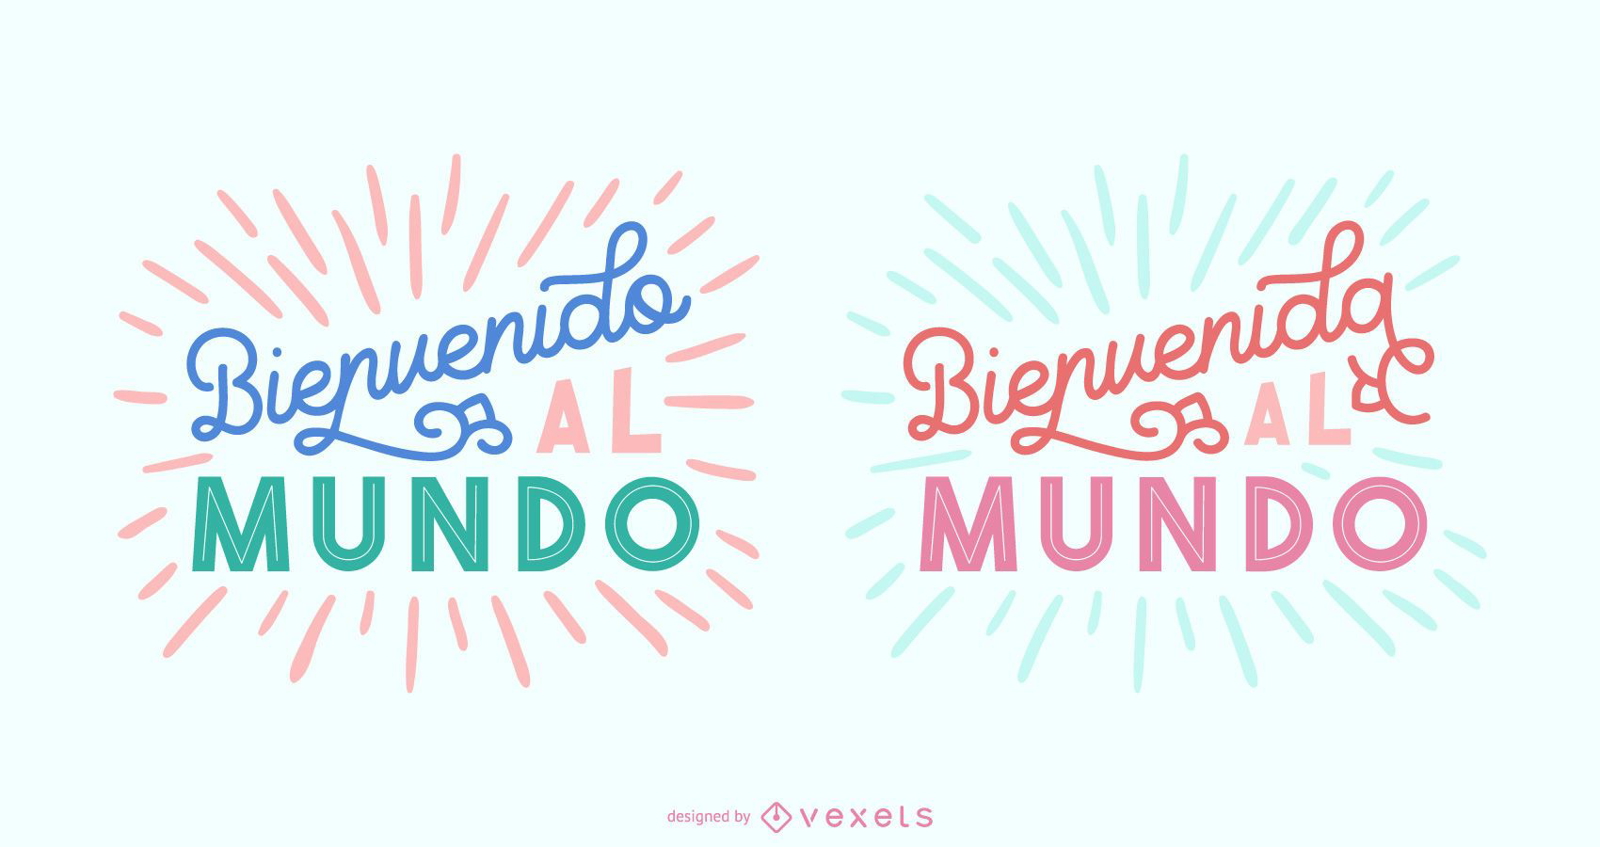 Novo conjunto de banner para beb?s com letras em espanhol